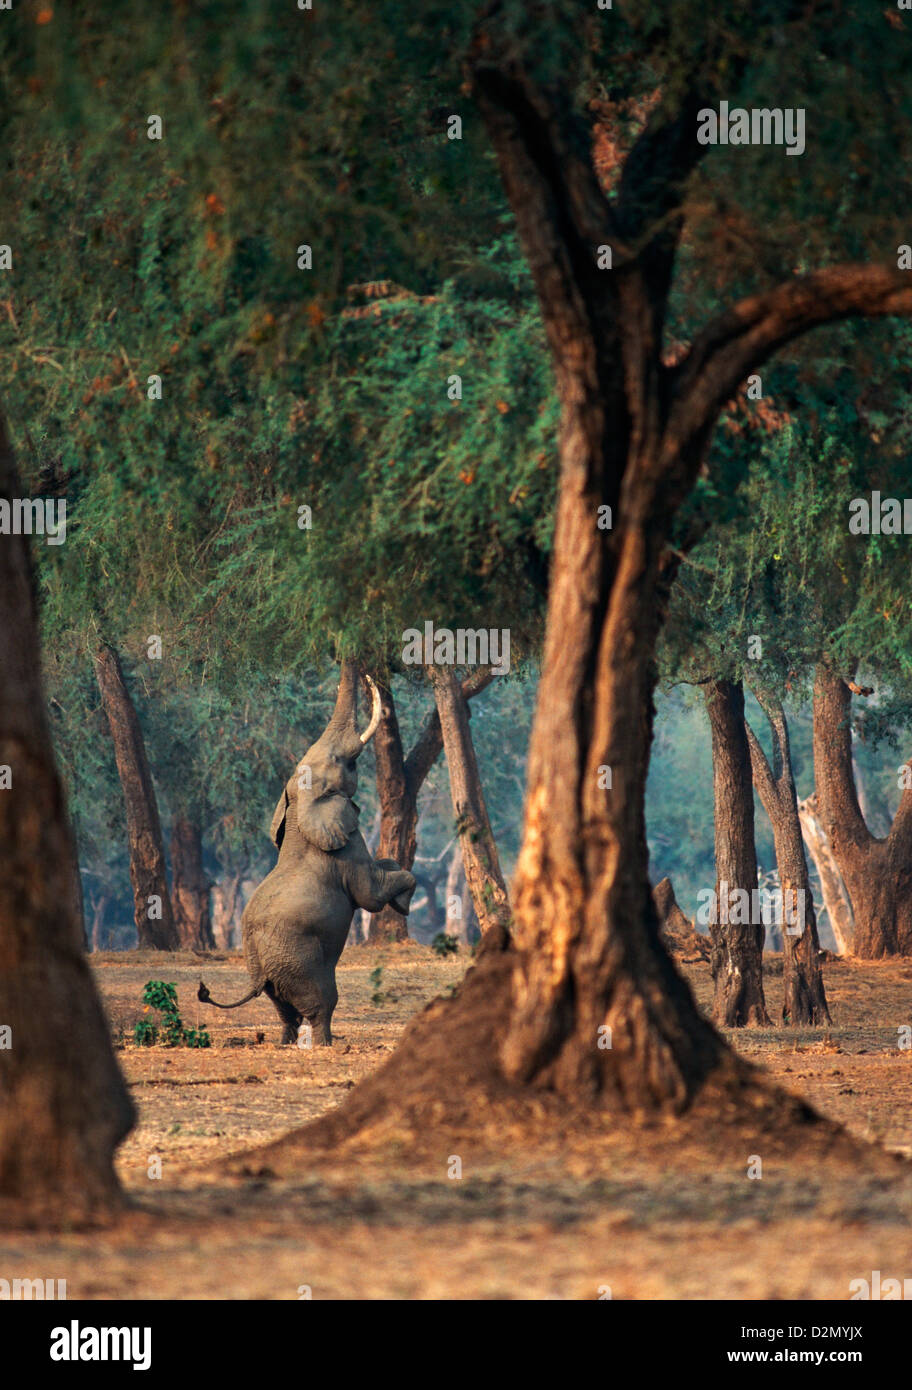 L'éléphant d'Afrique (loxodonta africana) se tient sur ses deux pattes arrière, se nourrissant d'un acacia, drôle, Mana pools National Park, Zimbabwe - Afrique Banque D'Images